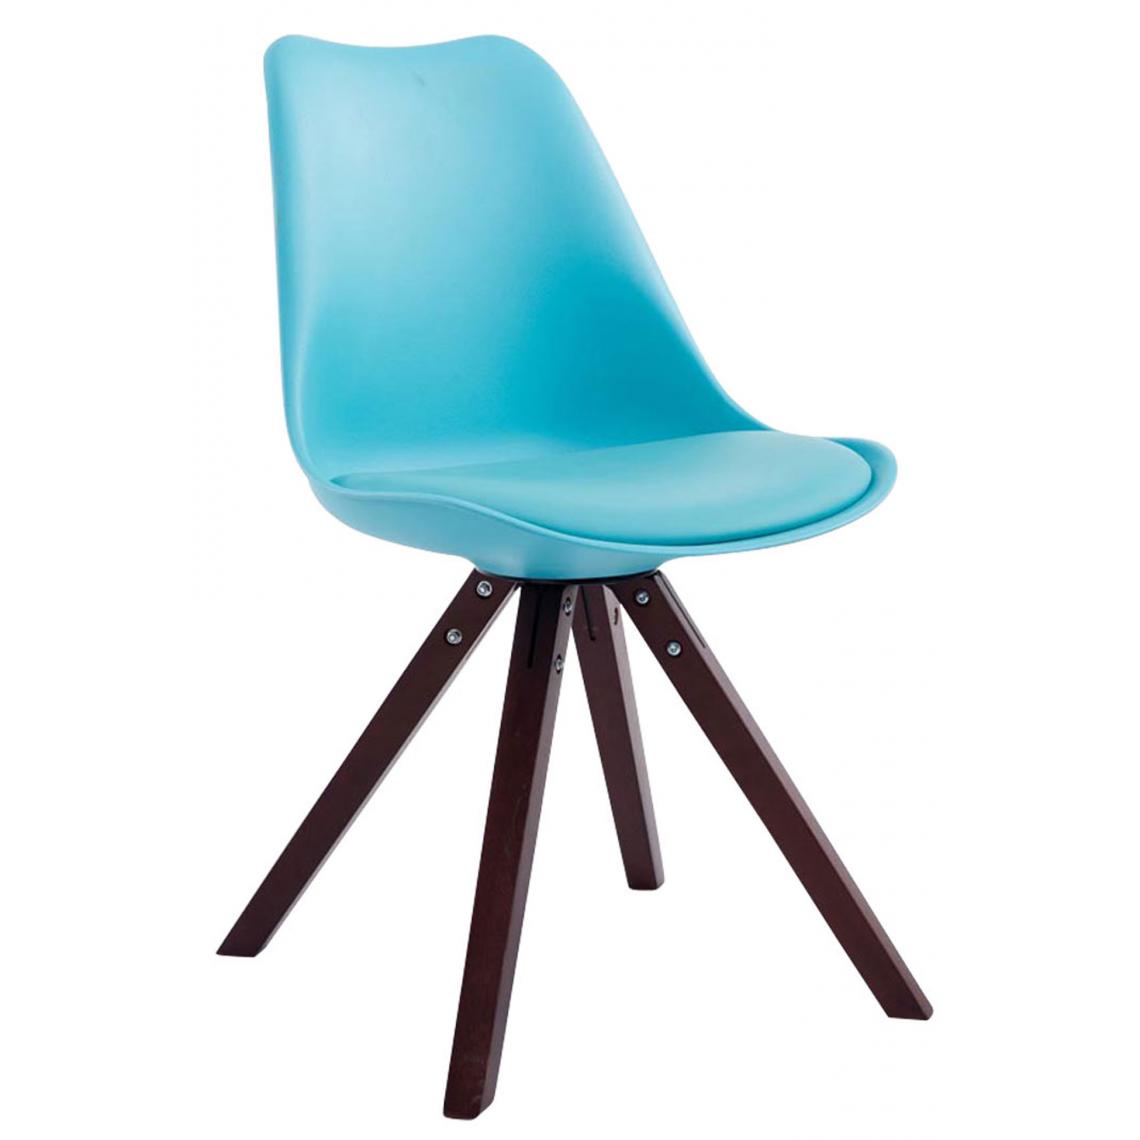 Icaverne - Admirable Chaise visiteur edition Katmandou cuir synthétique carré cappuccino (chêne) couleur bleu - Chaises